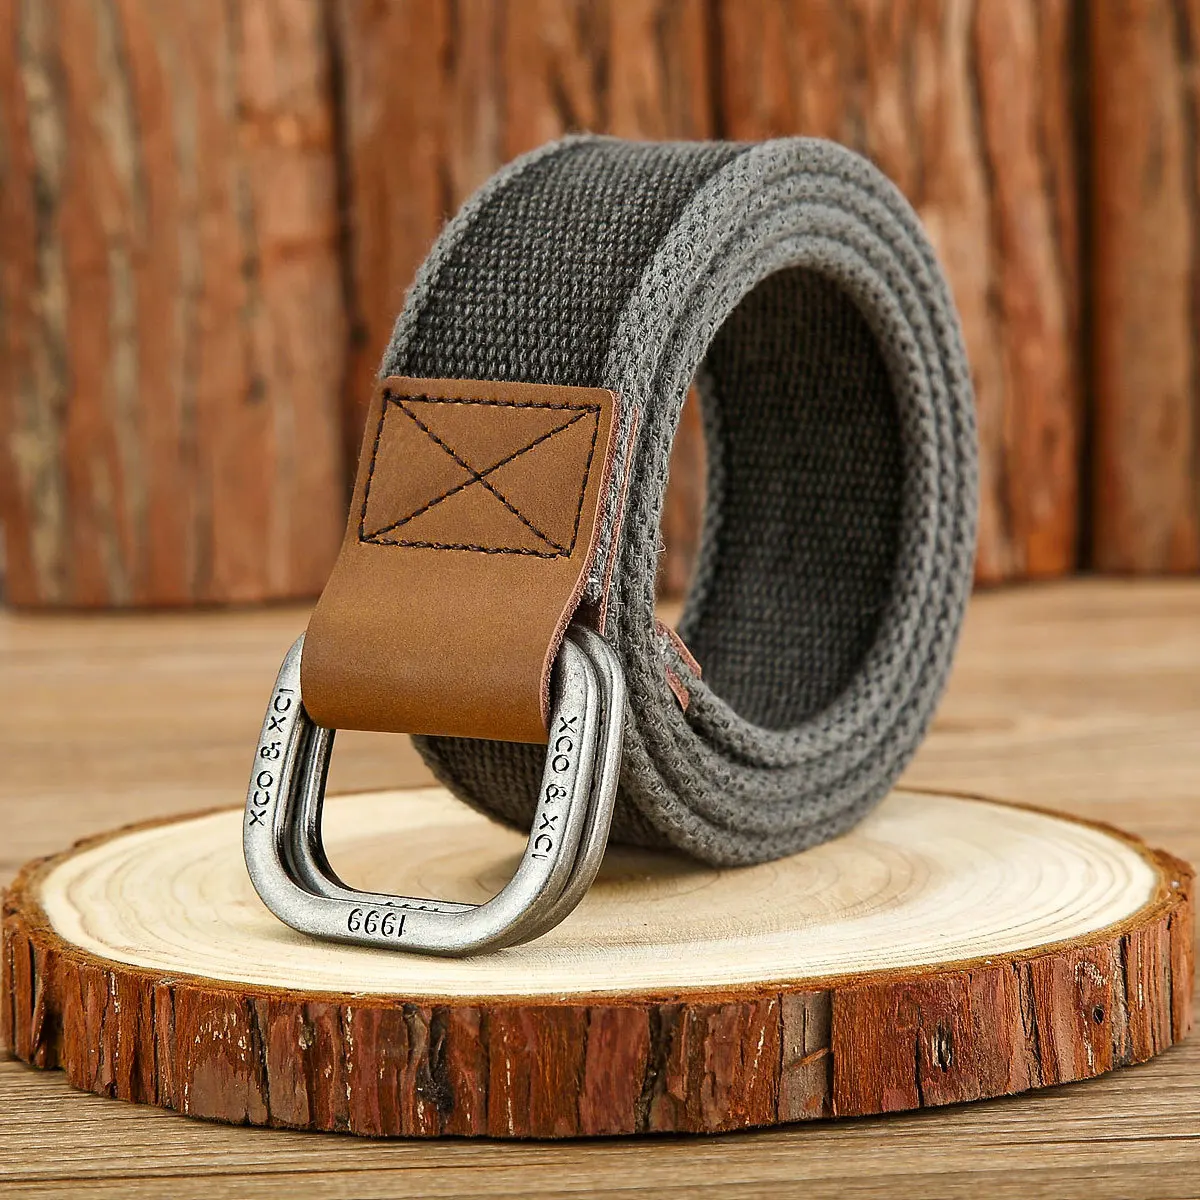 3.8cm New Simple Double Ring Alloy Buckle Woven Canvas Cotton Men's Belt  Retro Casual Decorative Belt For Men Wholesale - AliExpress